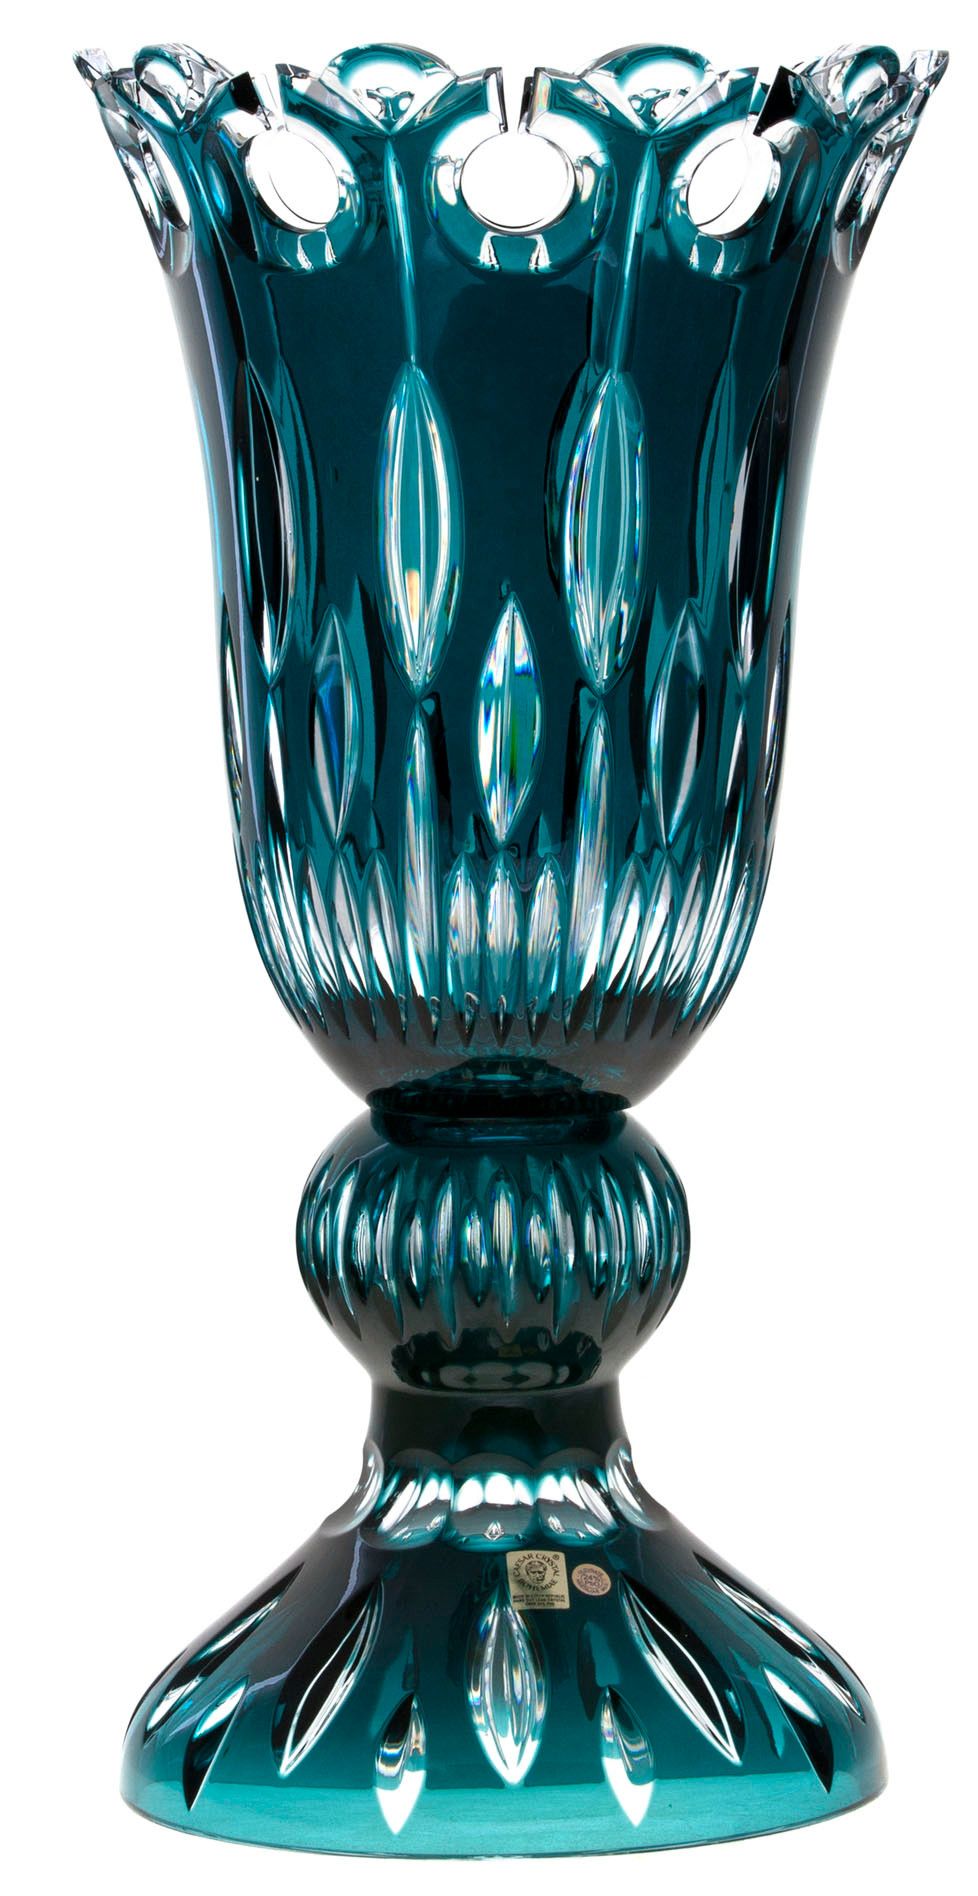 Krištáľová váza Flamenco, farba azúrová, výška 430 mm